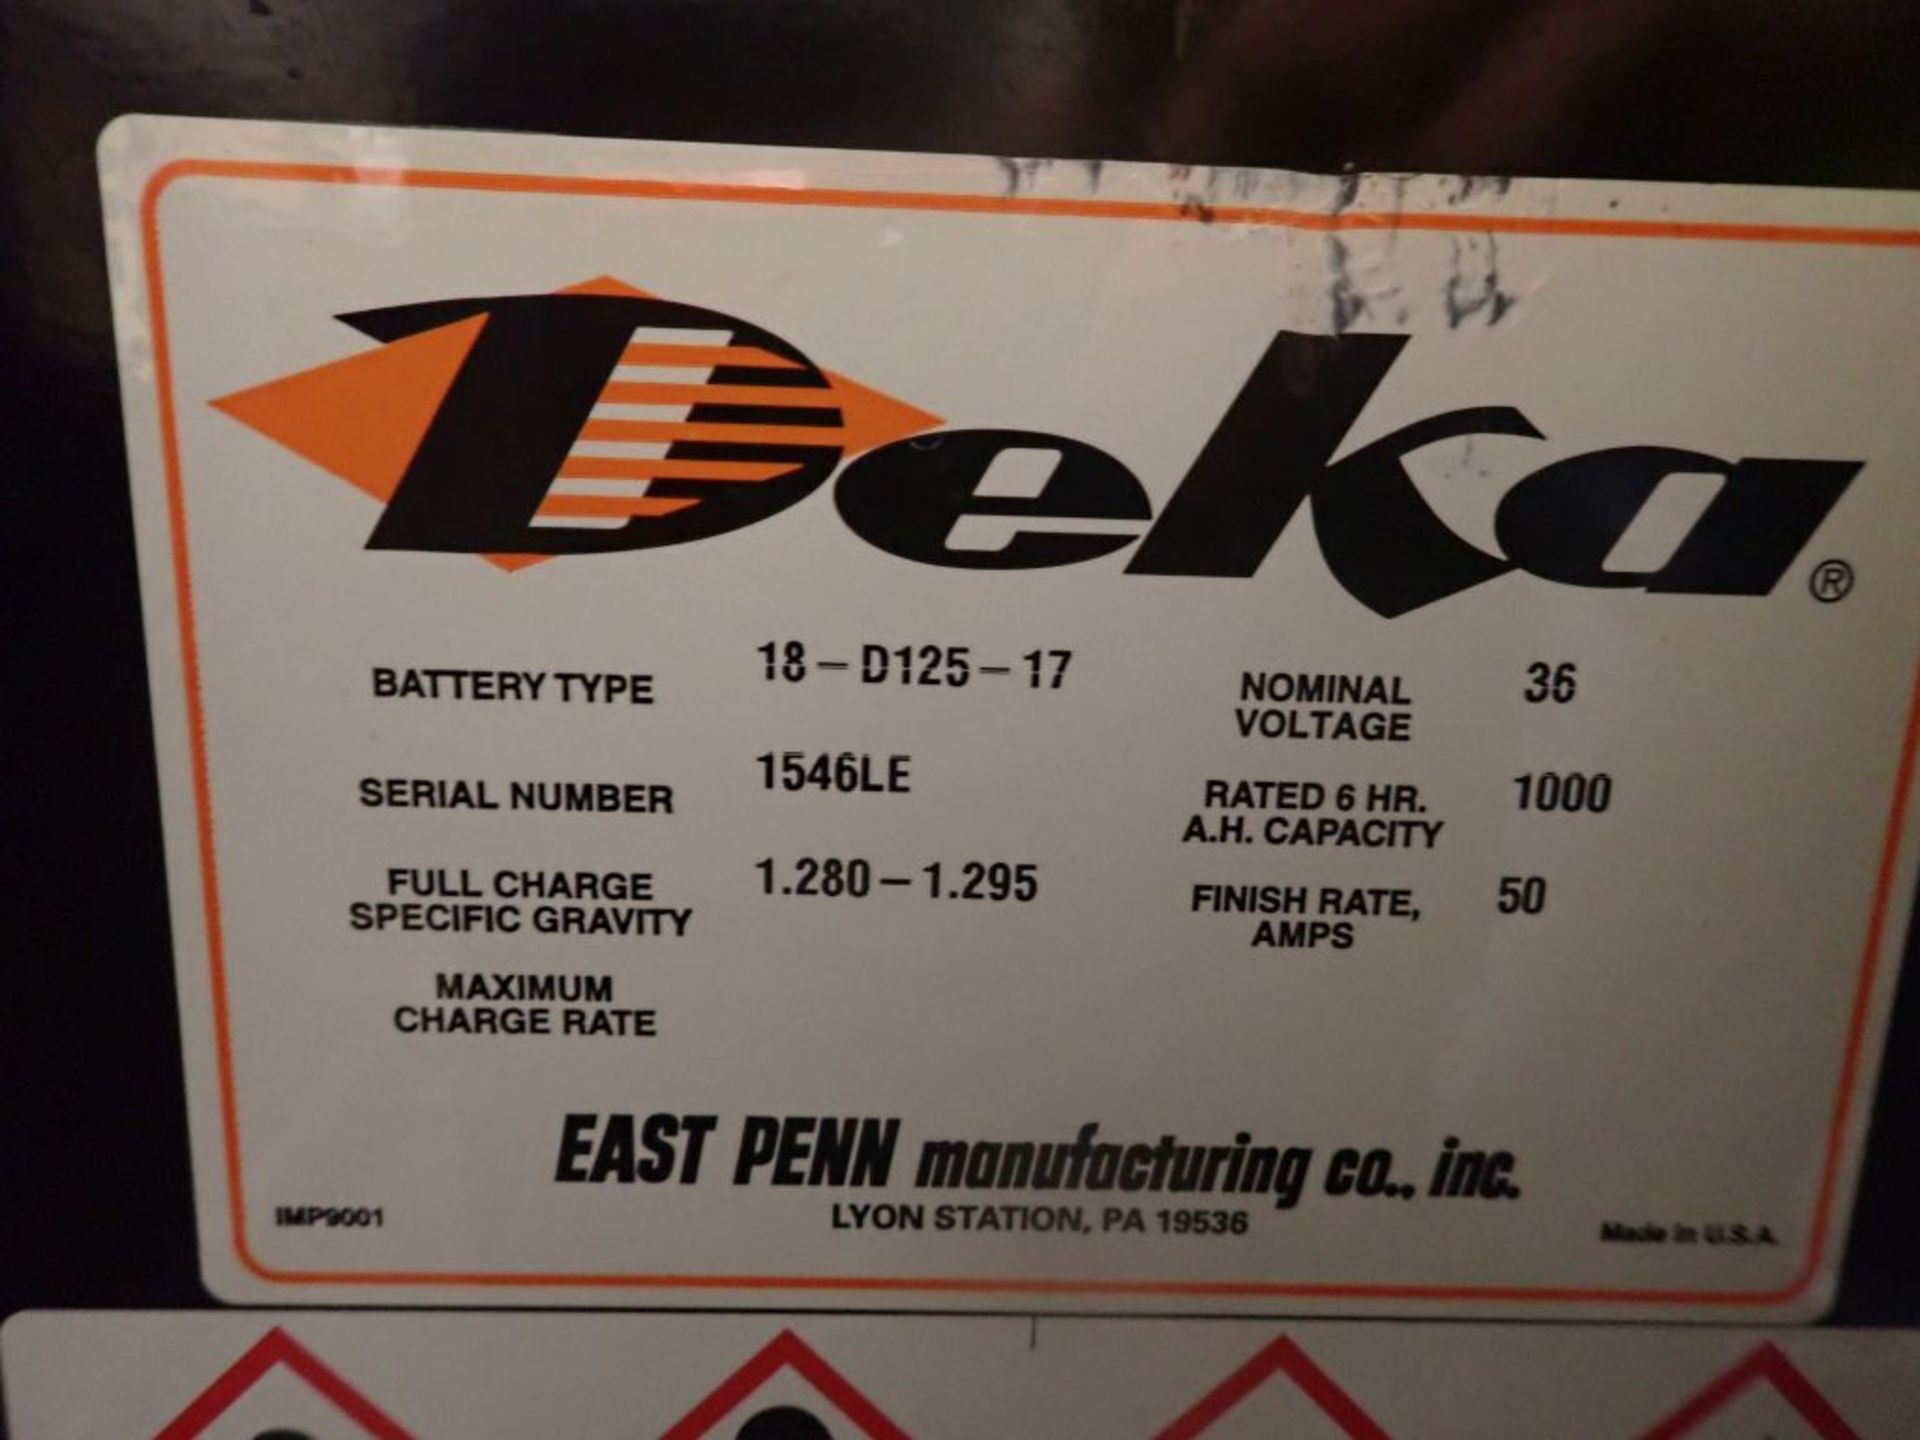 Deka 36V Forklift Battery - 36V; Type 18-D125-17; Tag: 218361; Lot Loading Fee: $30 - Image 3 of 4